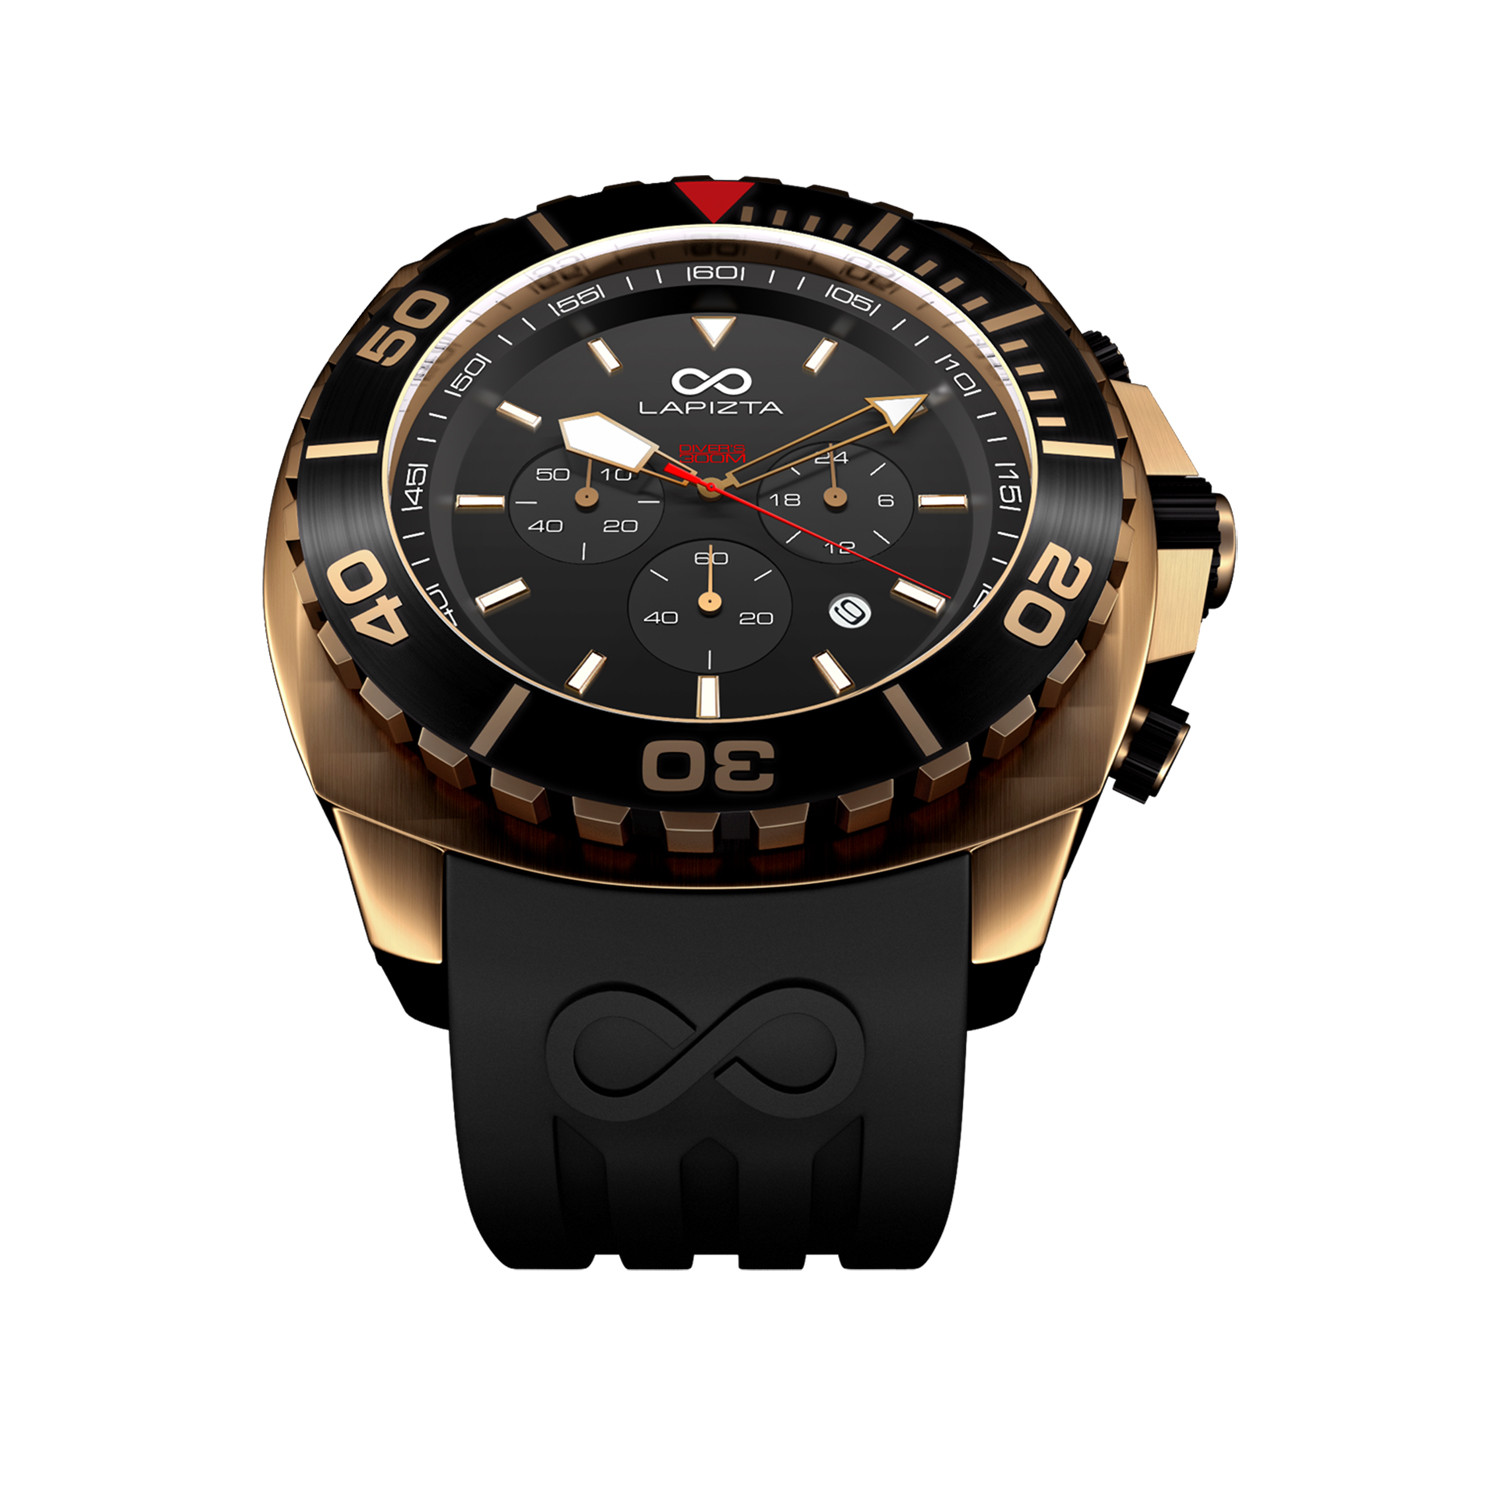 Lapizta Izurus Diver Chronograph Quartz L241804 Lapizta Watches